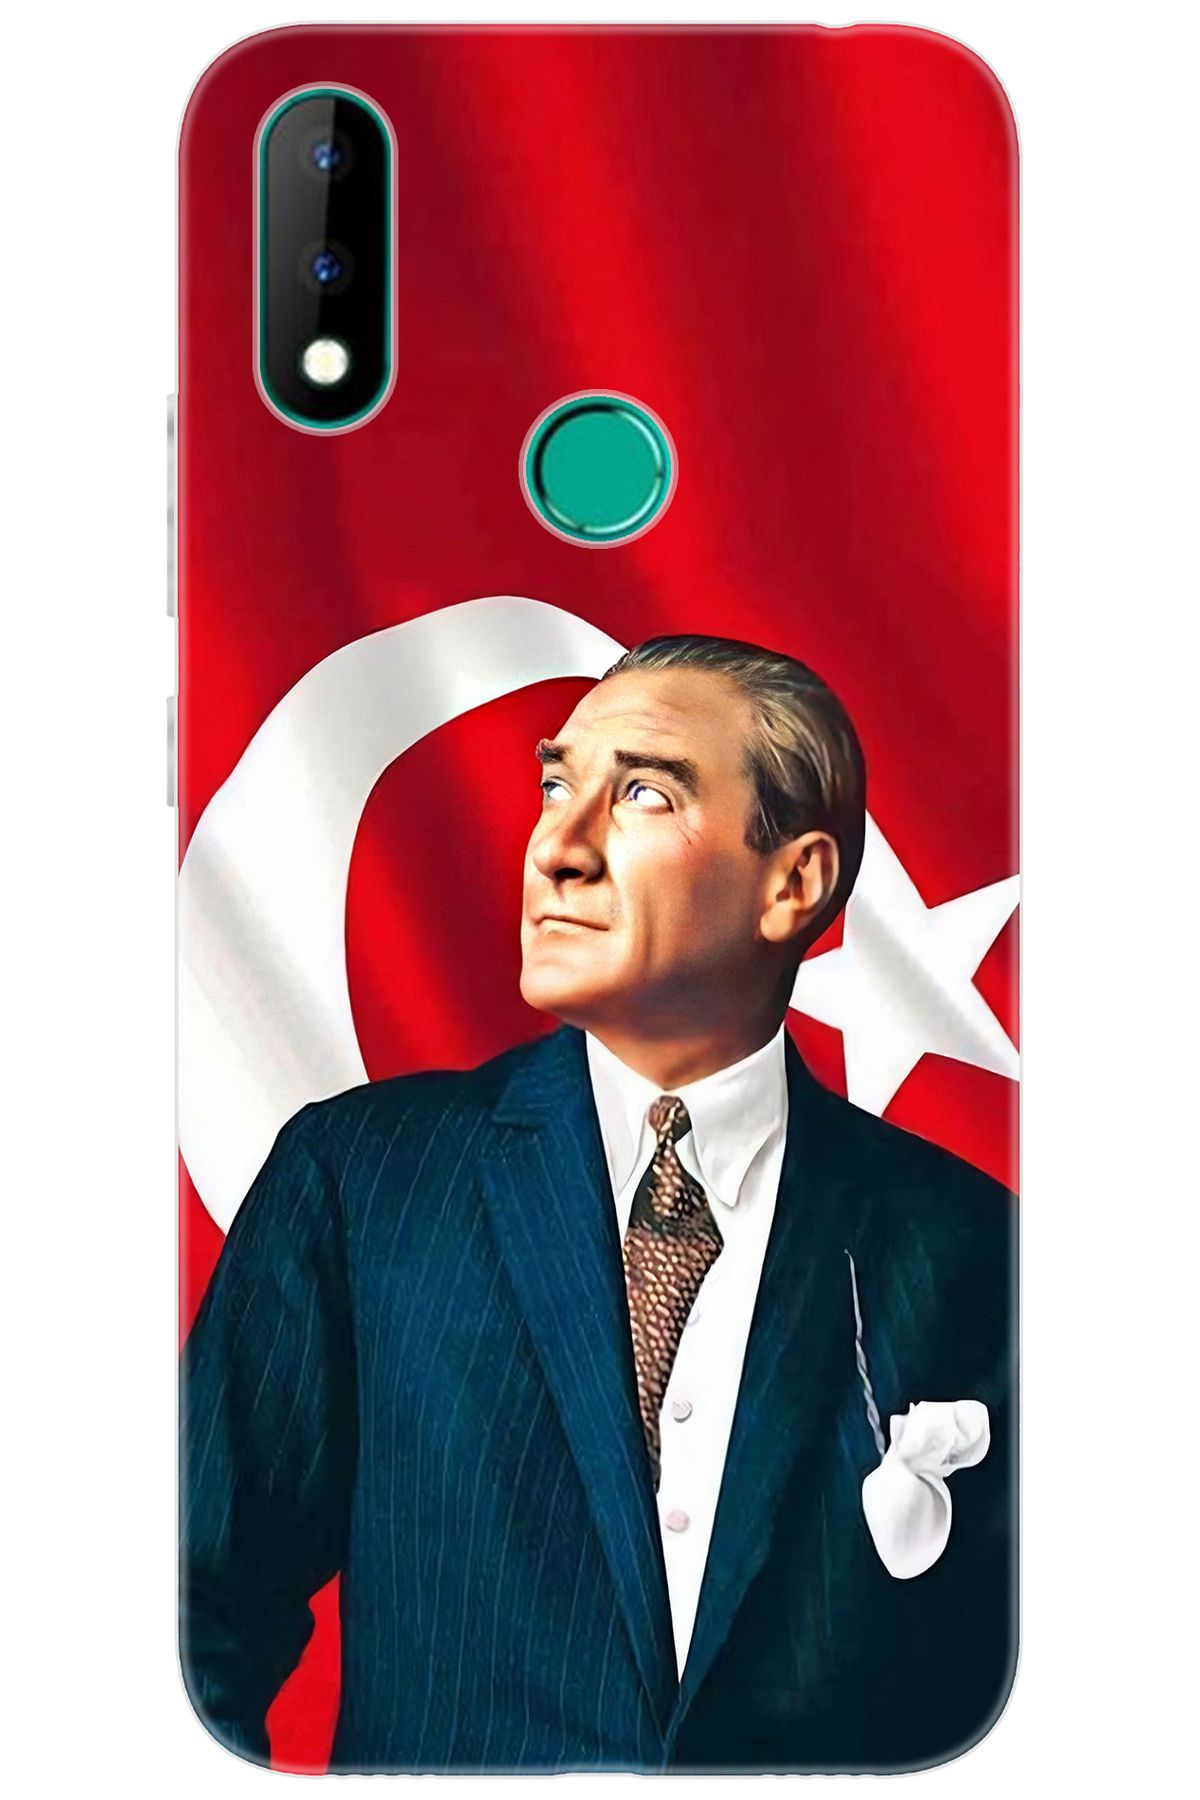 Casper Via S Uyumlu Kılıf Desen Baskılı Silikon Atatürk STK:105 CP-5ETLuhc